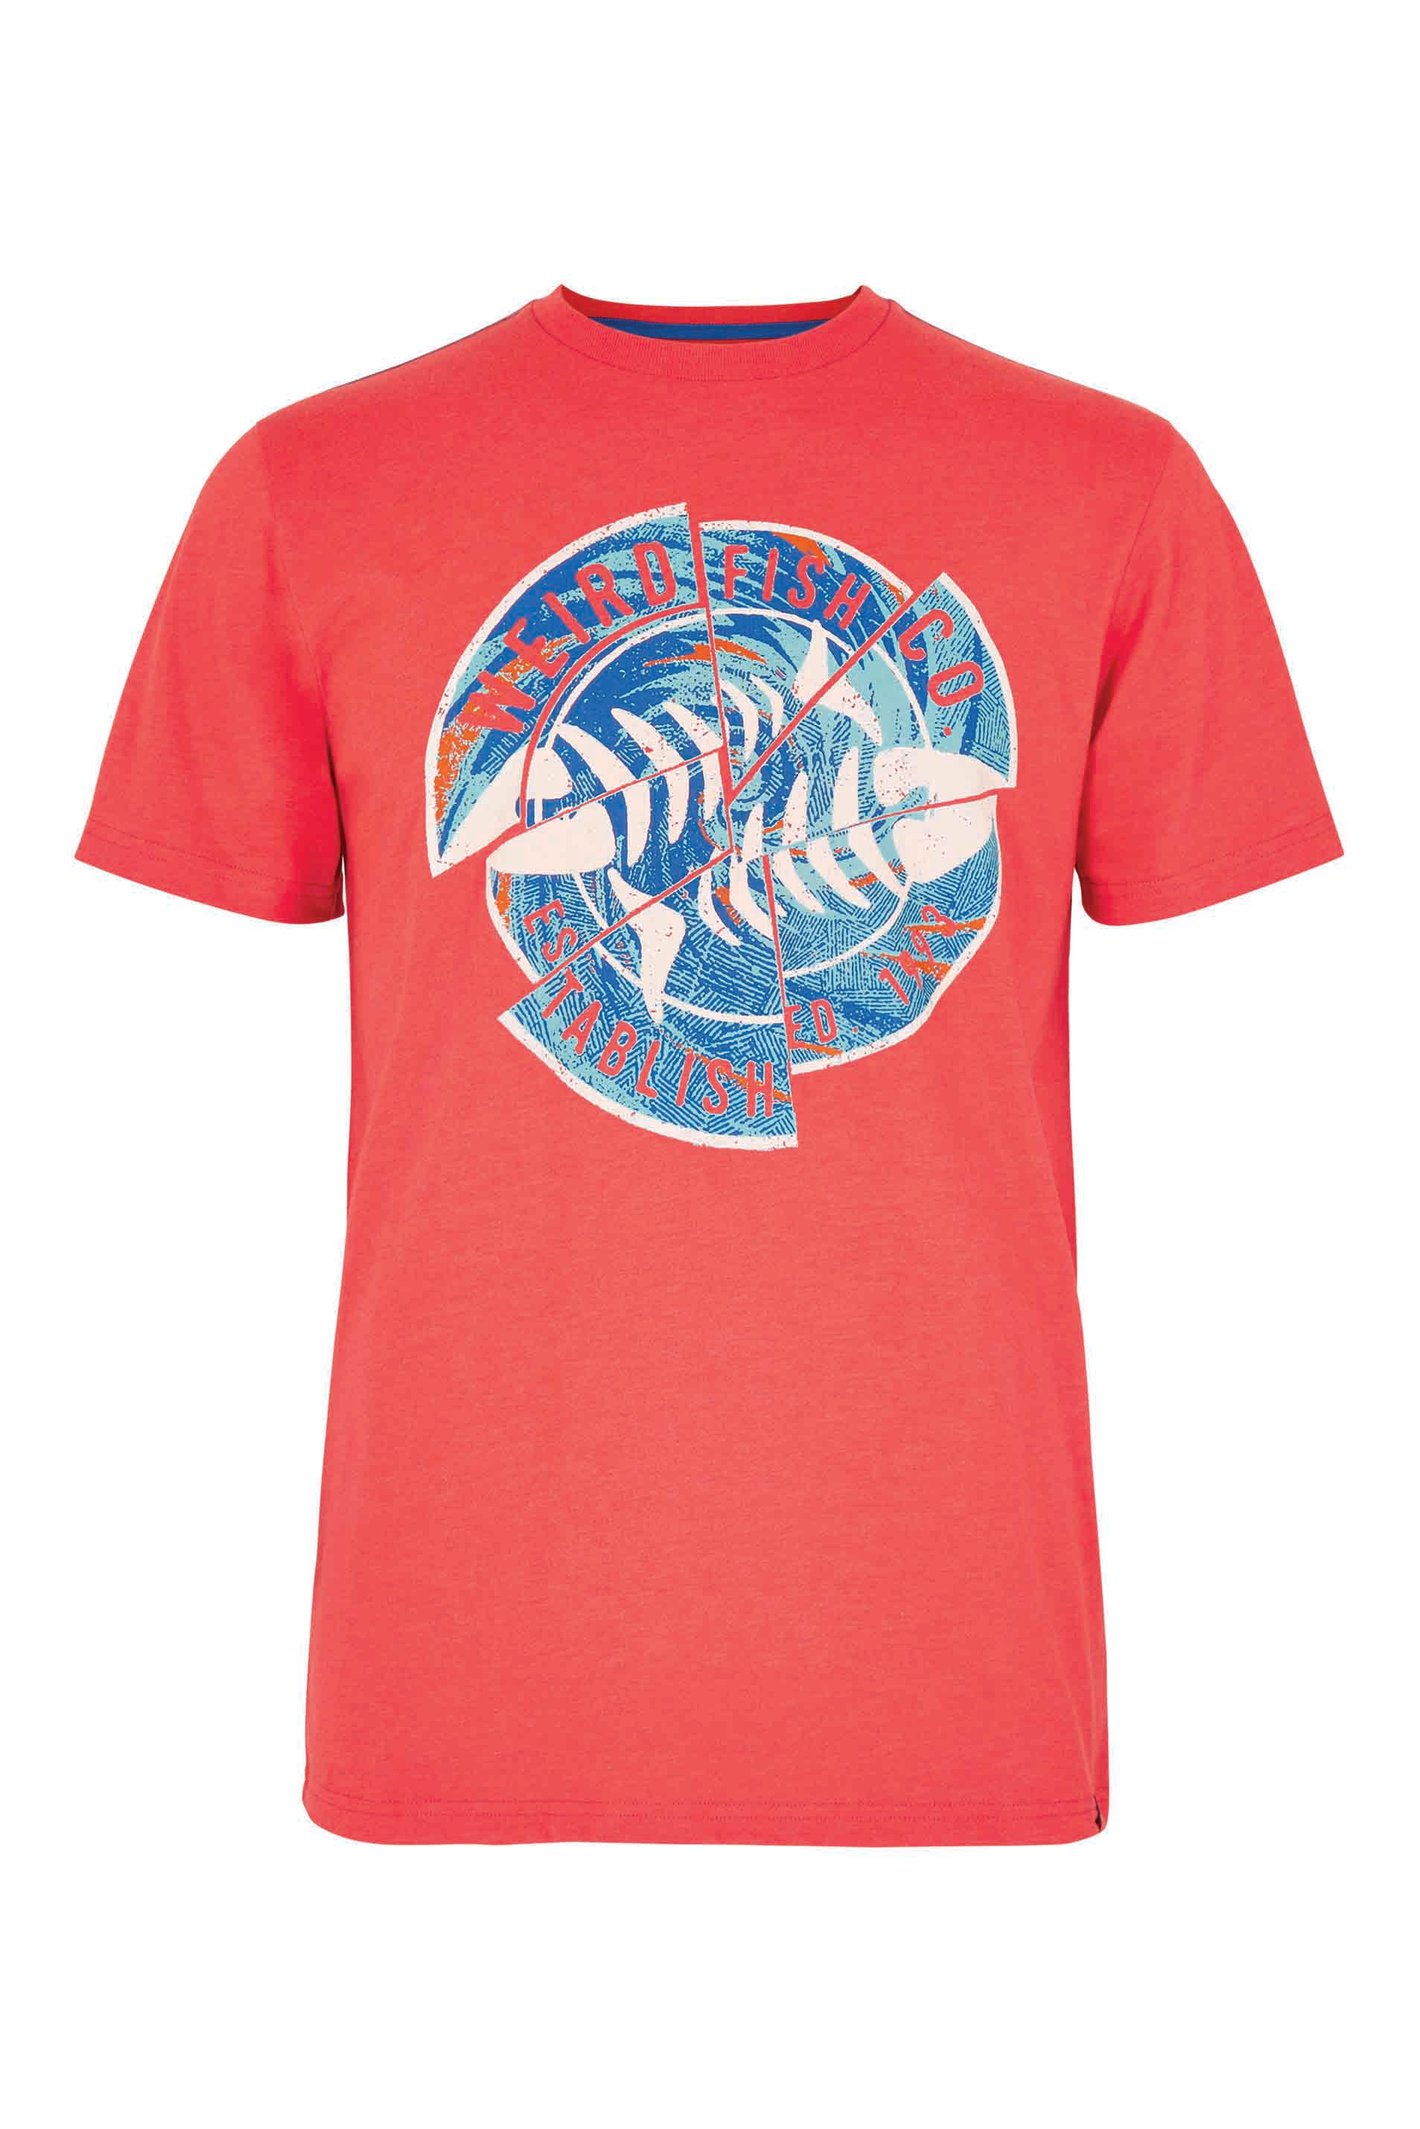 Weird Fish Vortex Eco Graphic T-Shirt Radical Red Size M